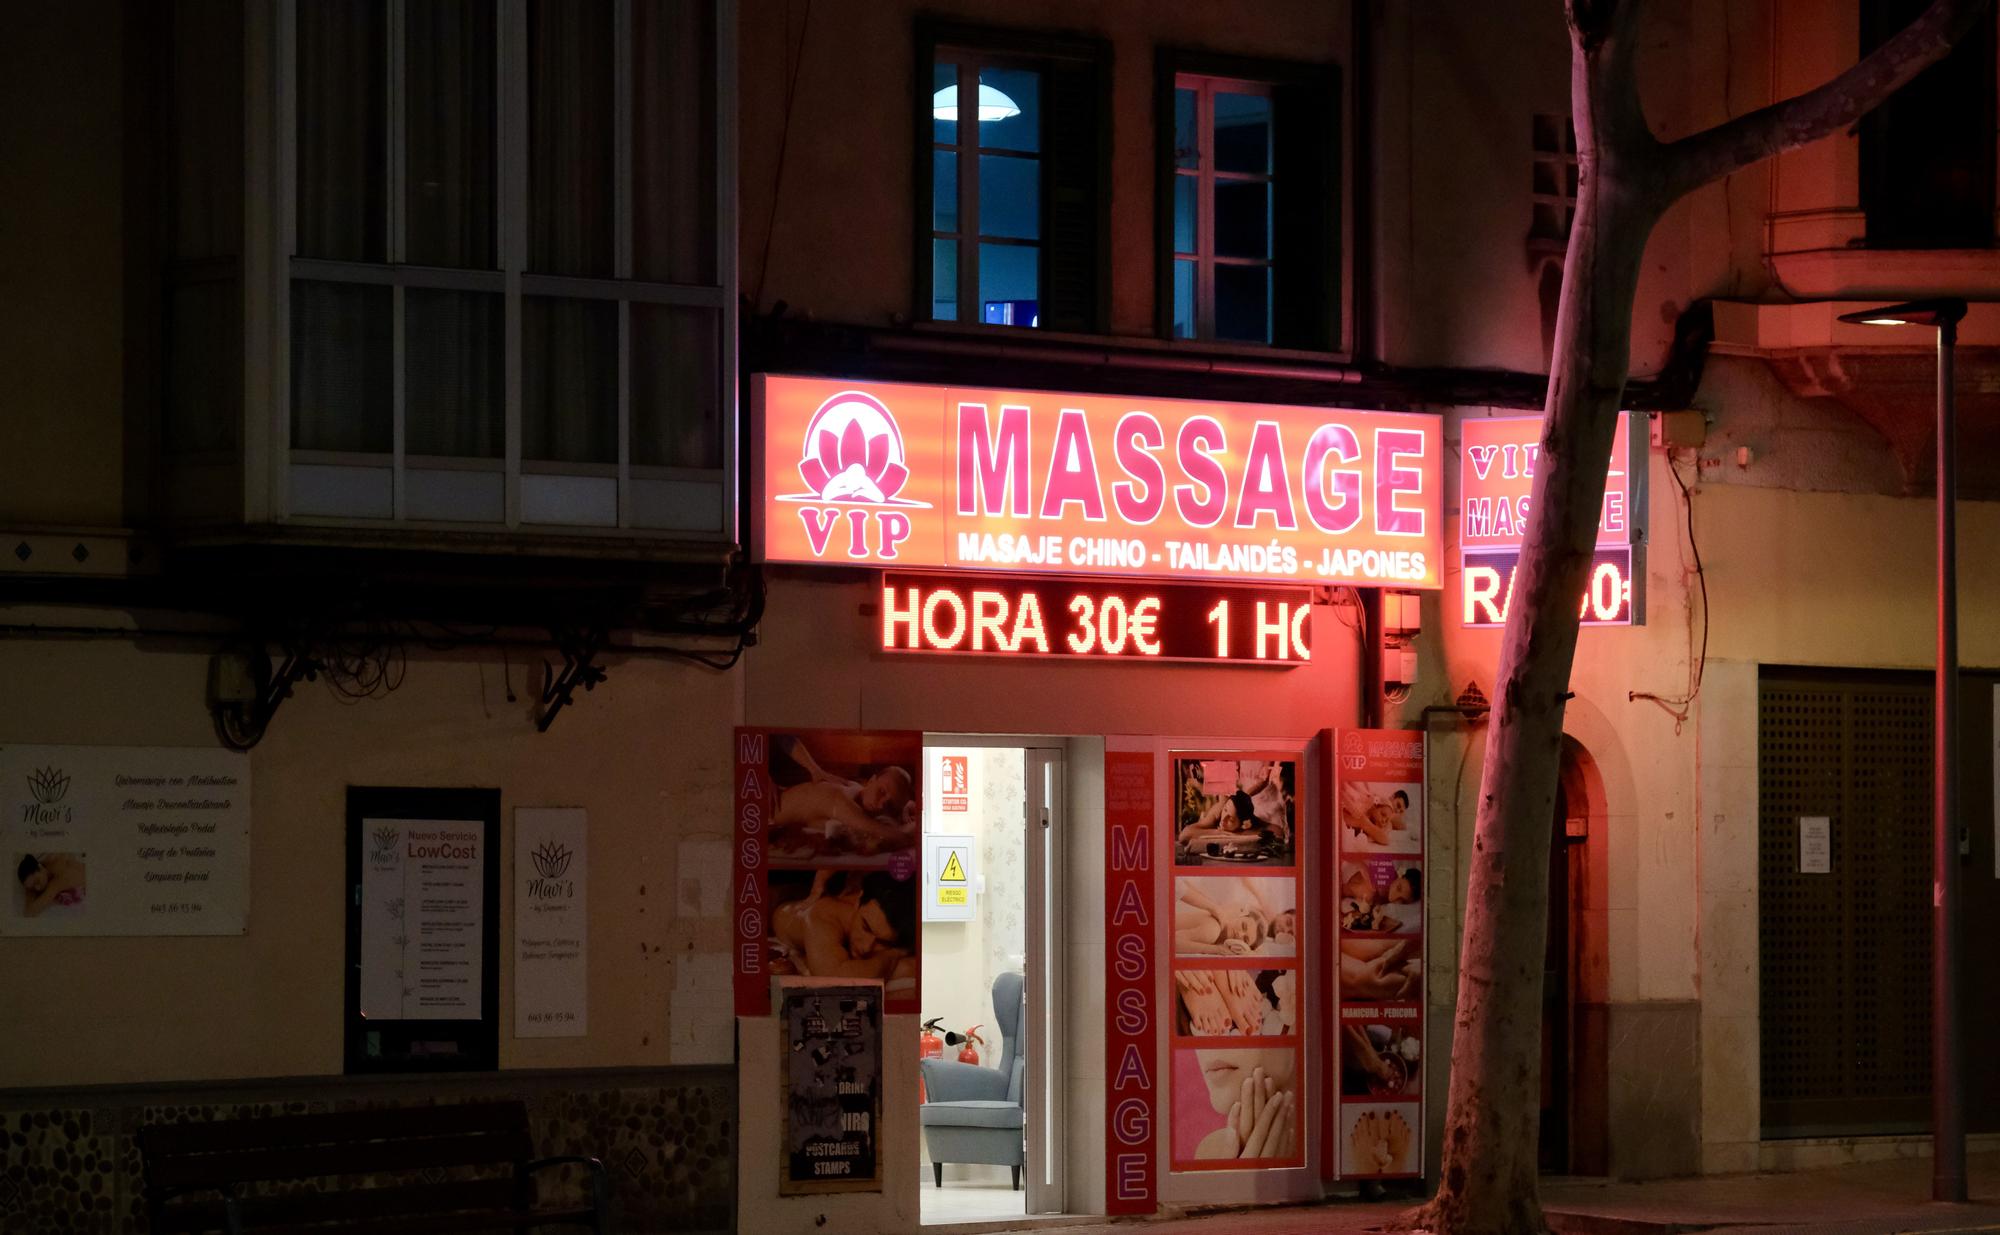 FOTOS: La proliferación de locales de masajes orientales en Palma